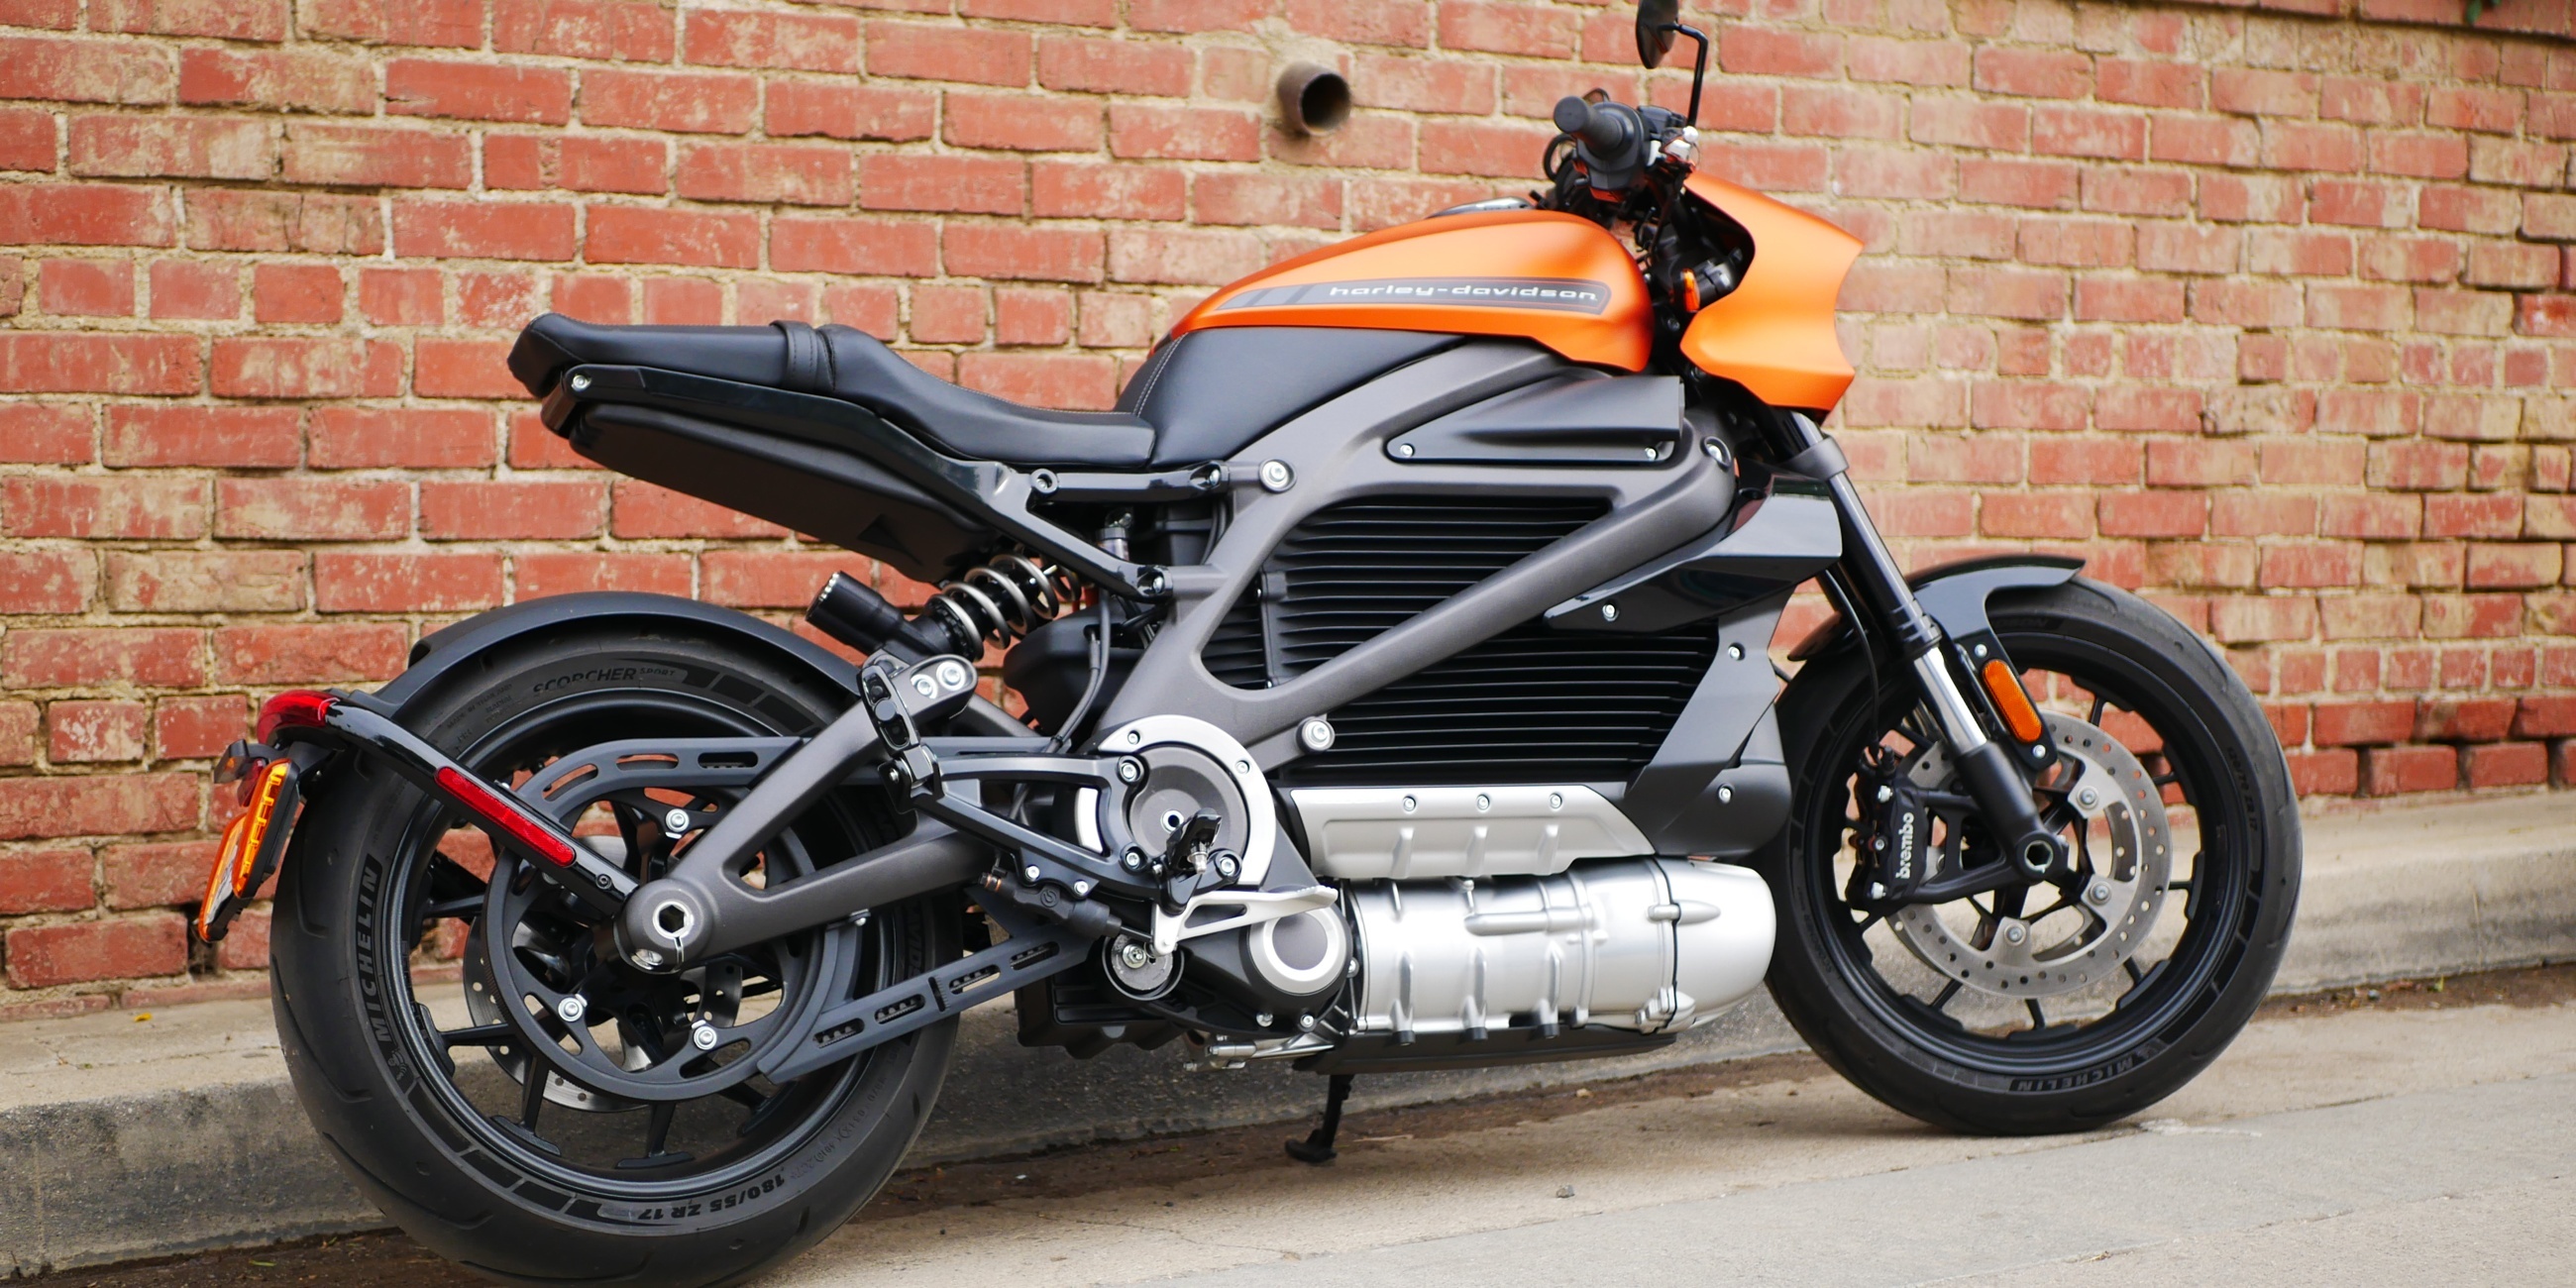 Harley-Davidson Bikes, 5-year plan, Electric motorcycle division, 2600x1300 Dual Screen Desktop